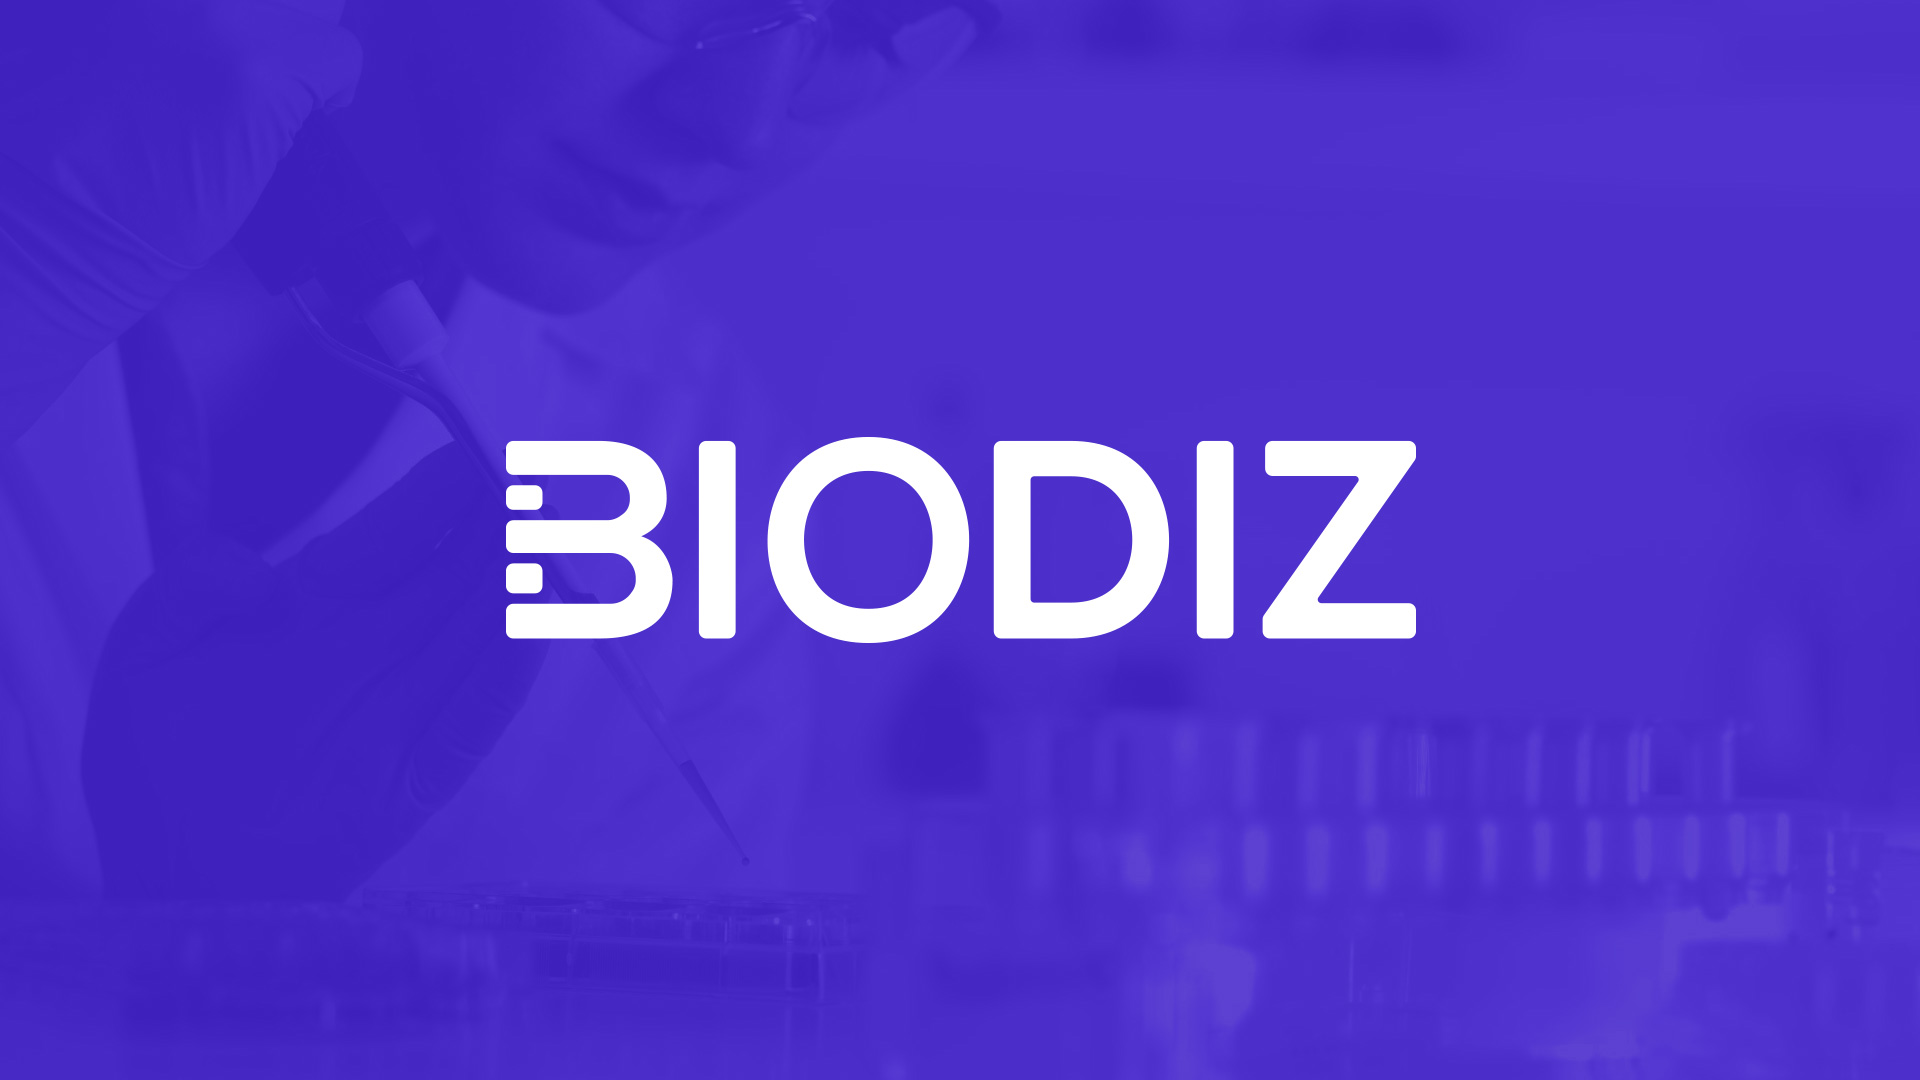 biodiz-01